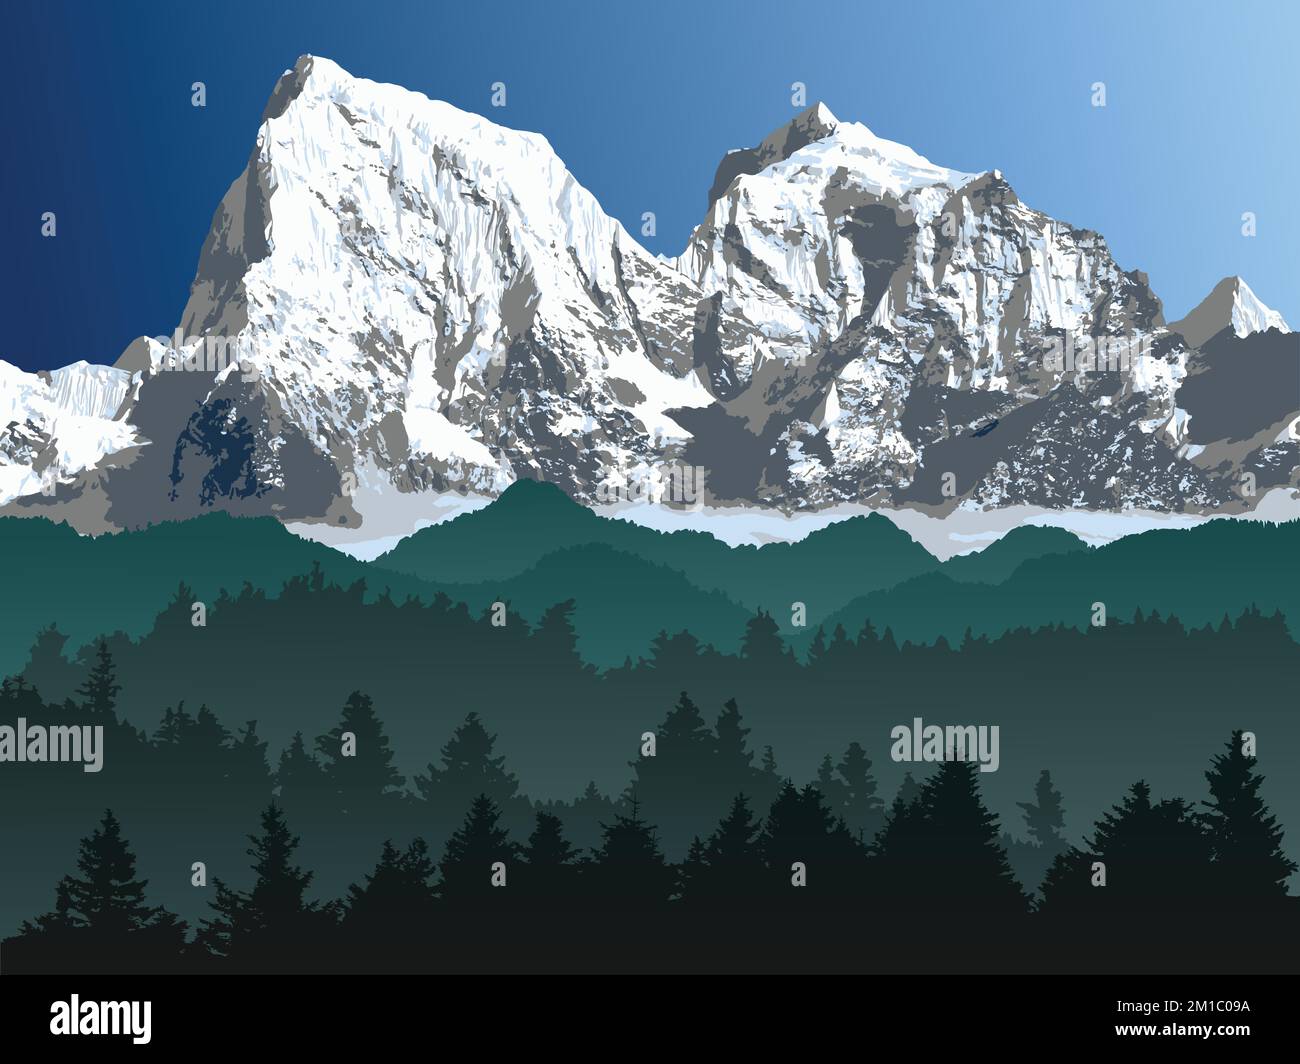 Grande chaîne de montagnes de l'Himalaya avec forêt, illustration vectorielle des montagnes de l'Himalaya, montagne enneigée de couleur blanche et bleue Illustration de Vecteur